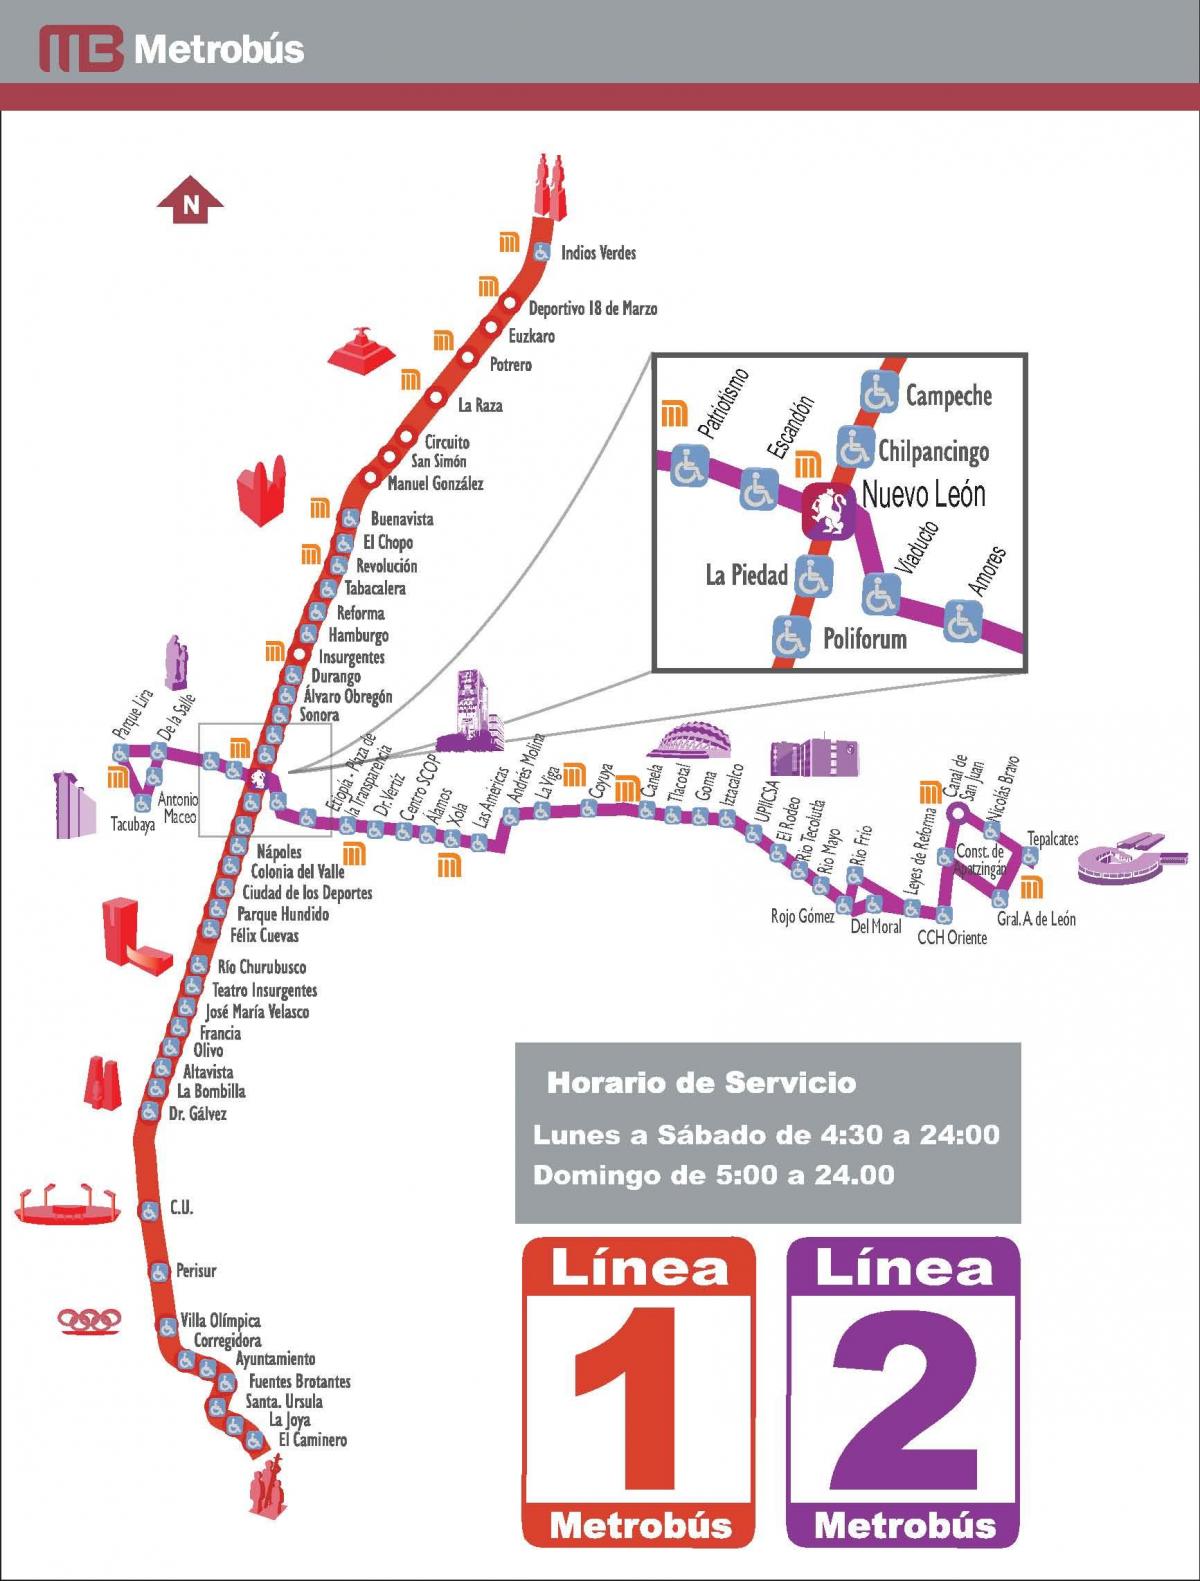 χάρτης της metrobus Πόλη του Μεξικού